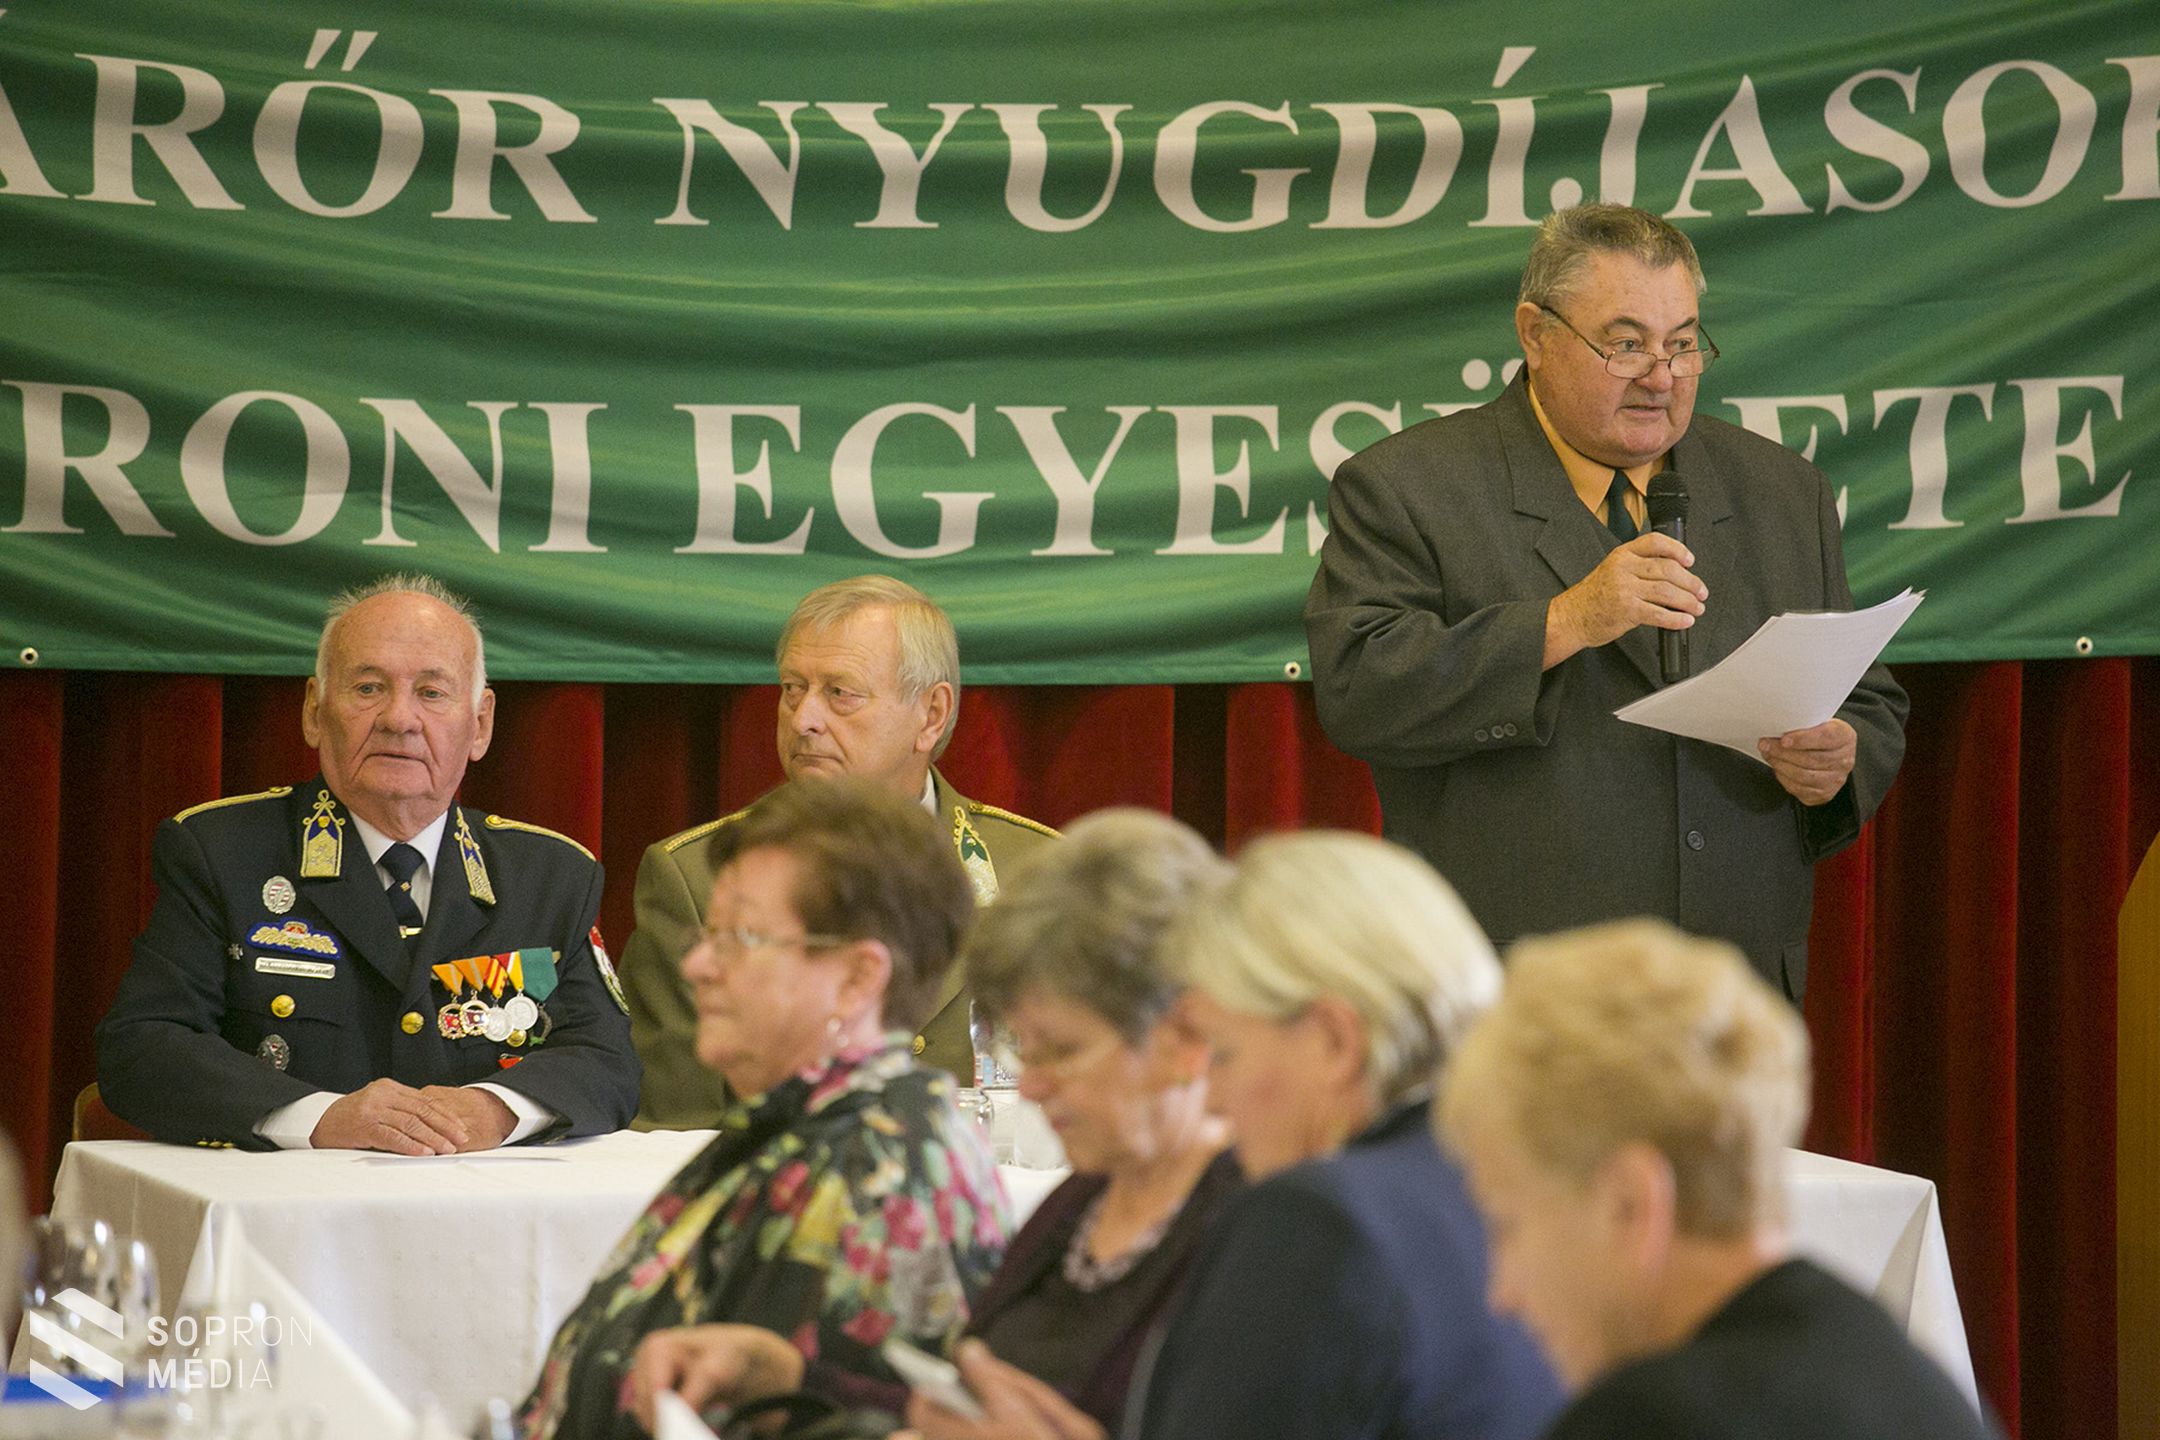 25 éves a Határőr Nyugdíjasok Soproni Egyesülete 